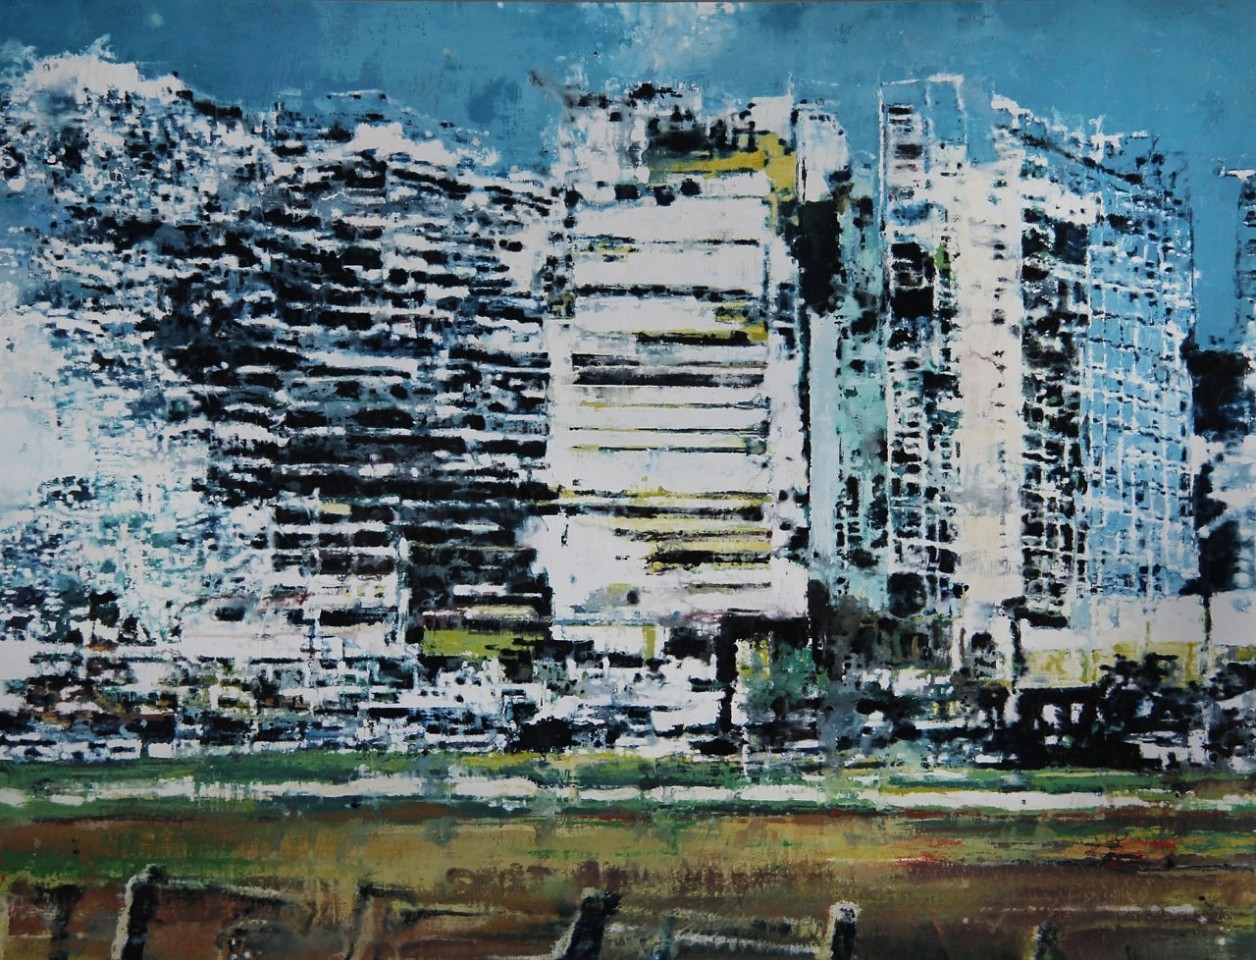 Philippe Cognee, TAJHI
2012, Wax on canvas